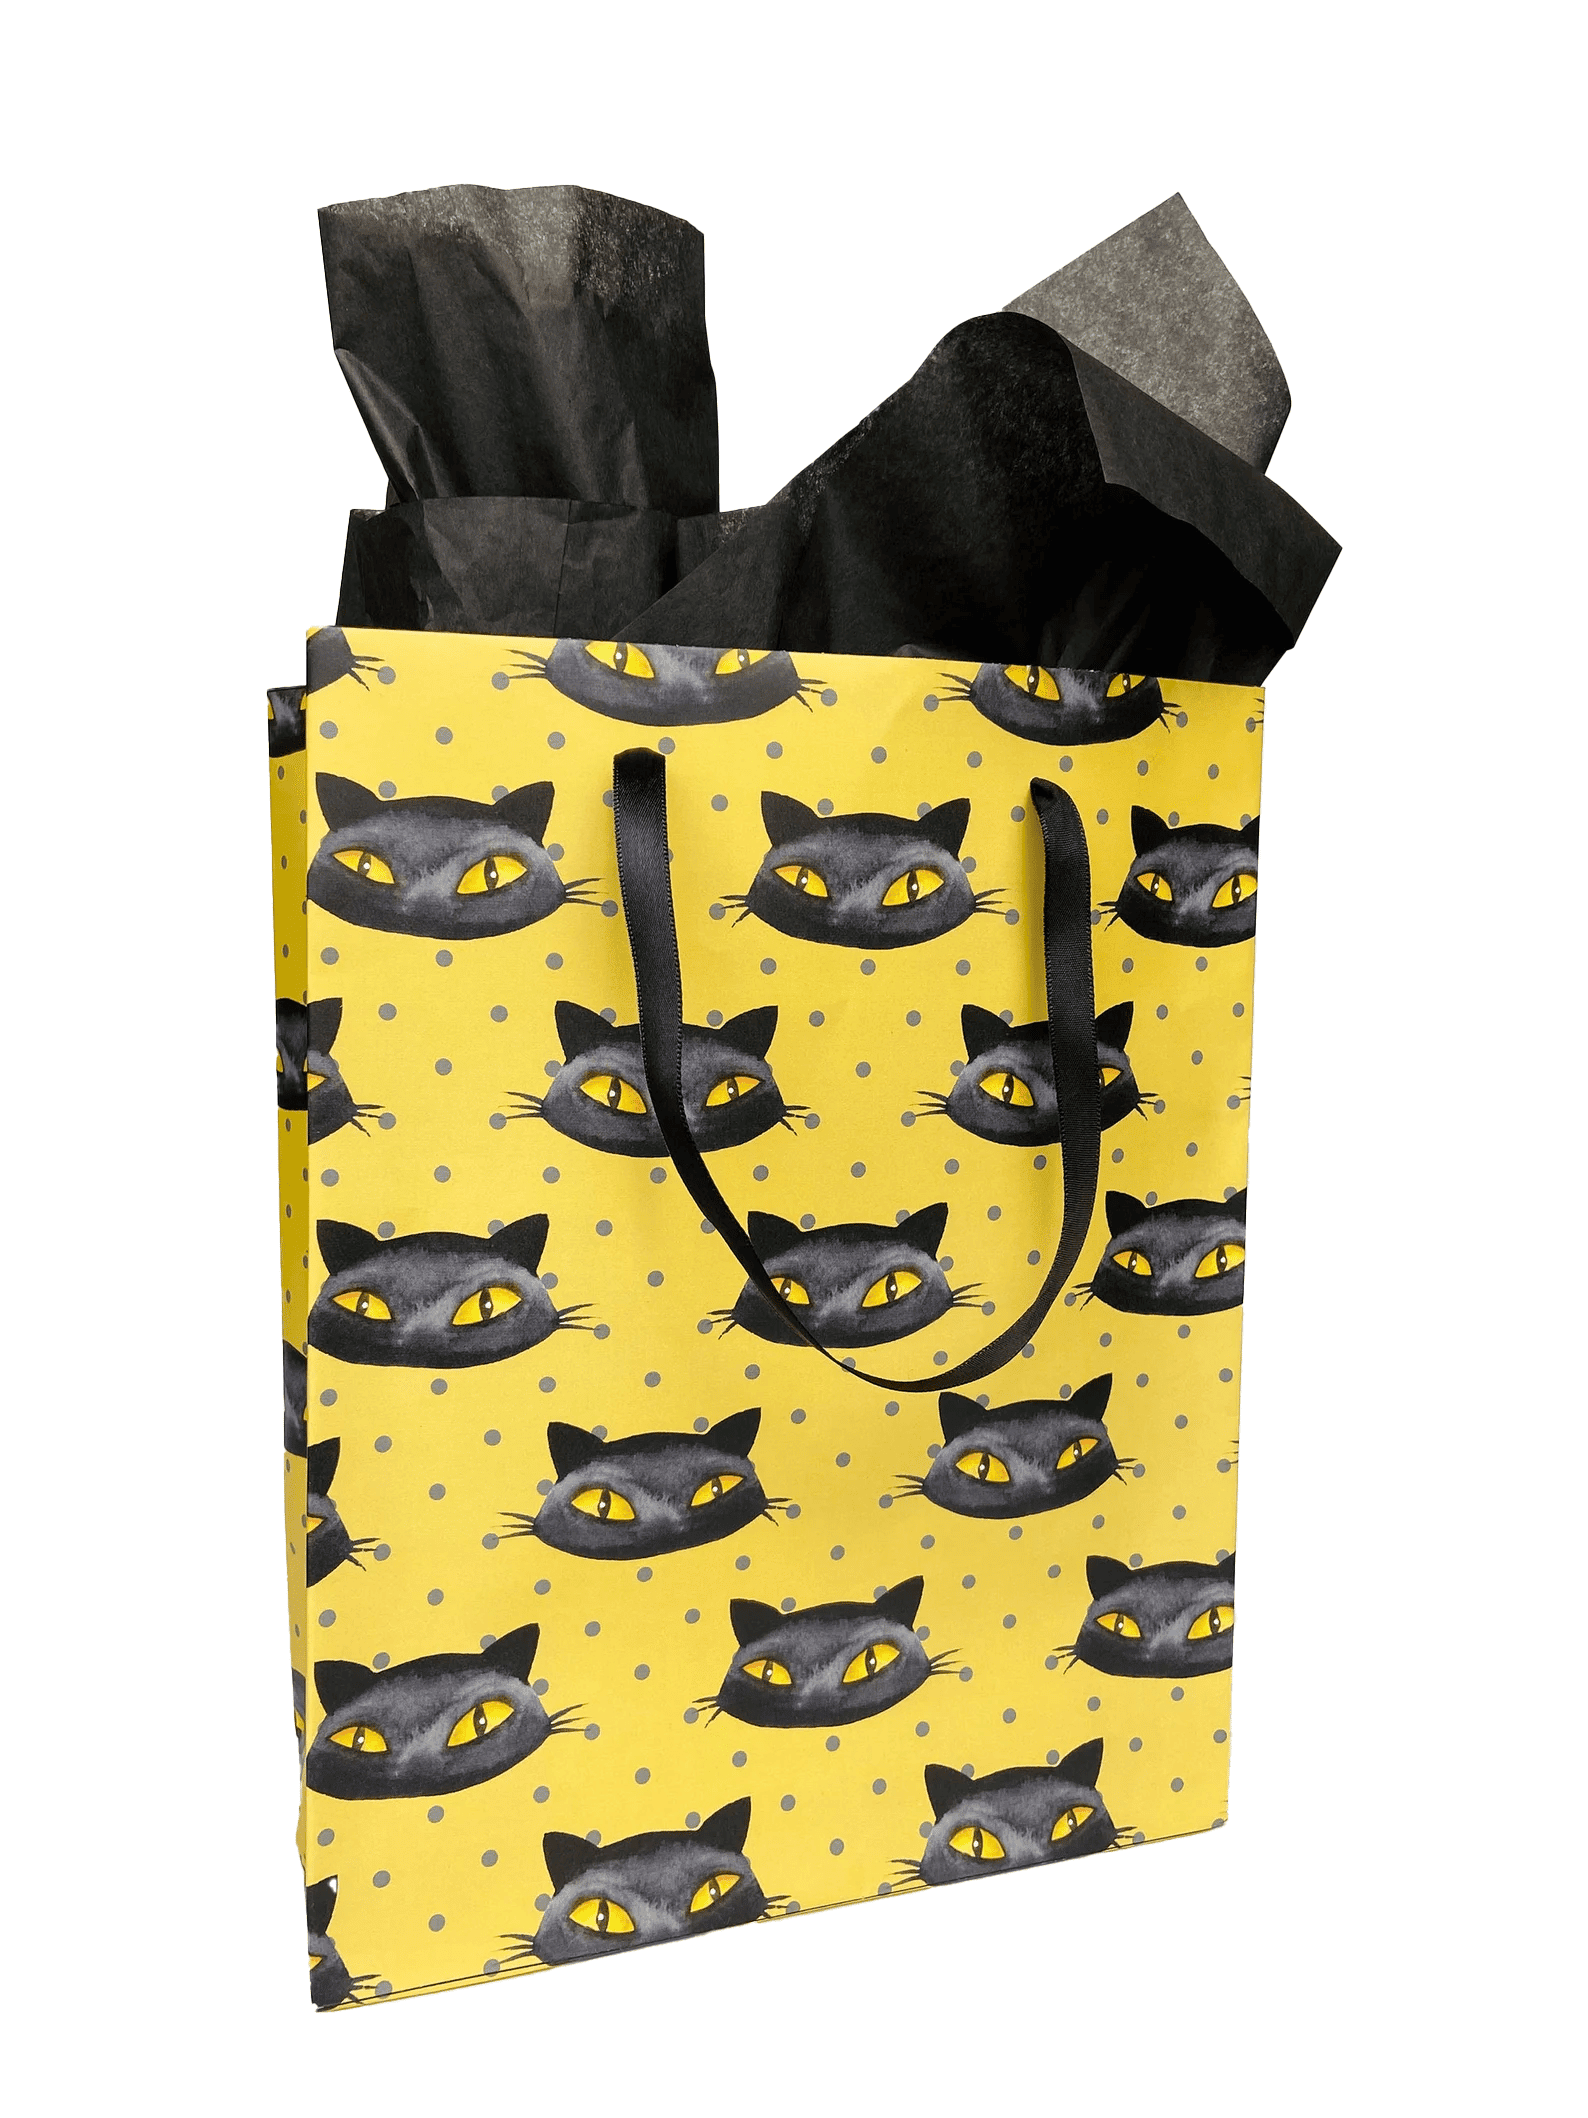 Black cat gift bags